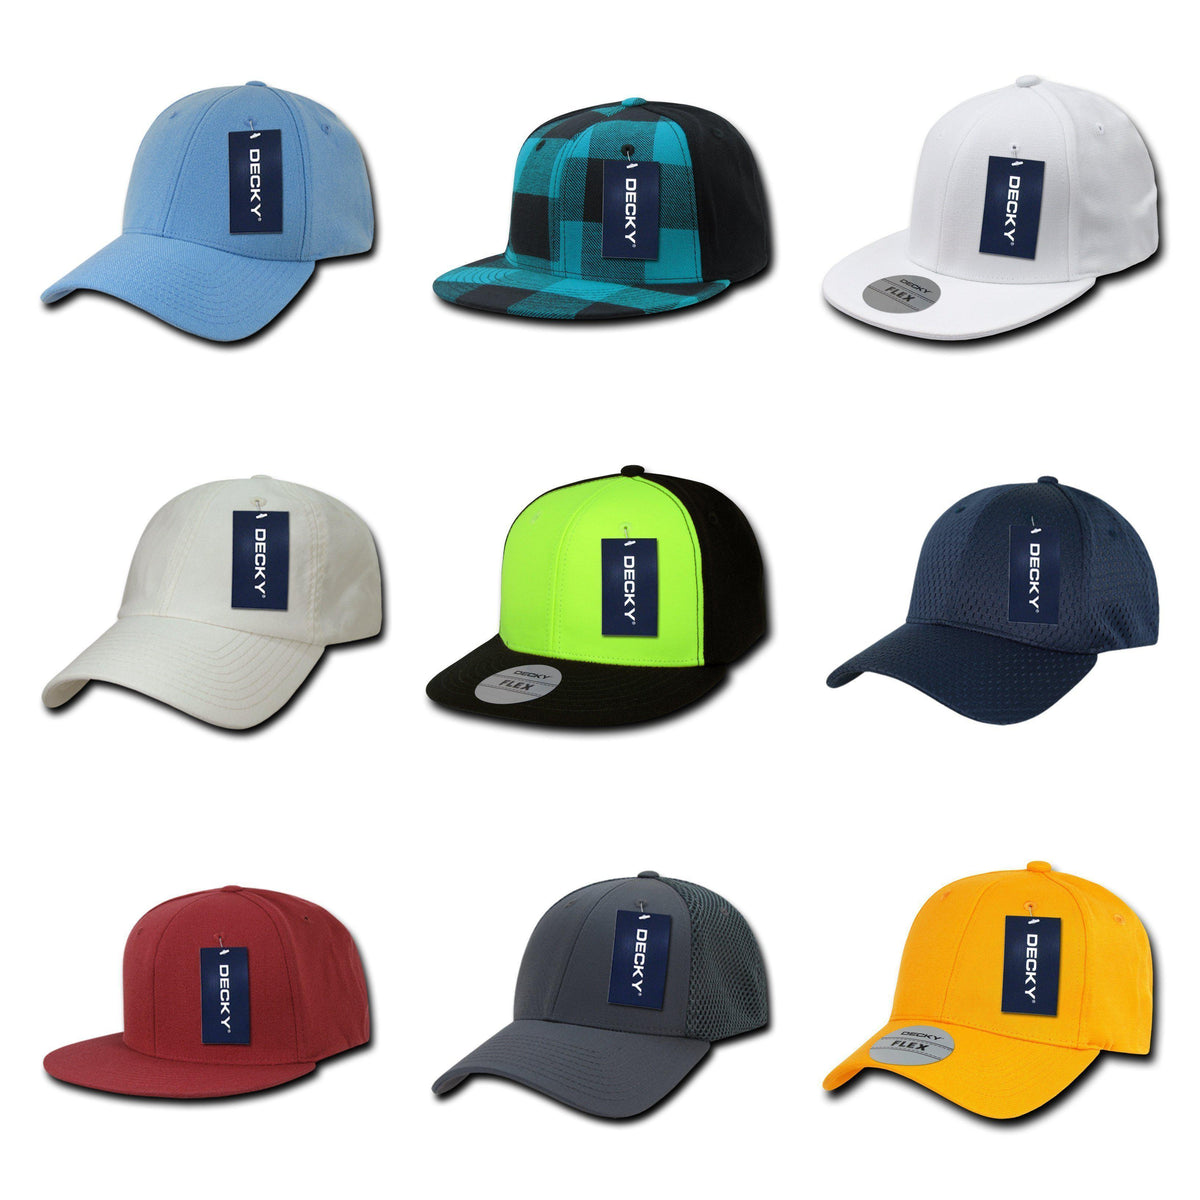 Wholesale Flex Hats in Bulk, Blank Flexfit Caps – The Park Wholesale